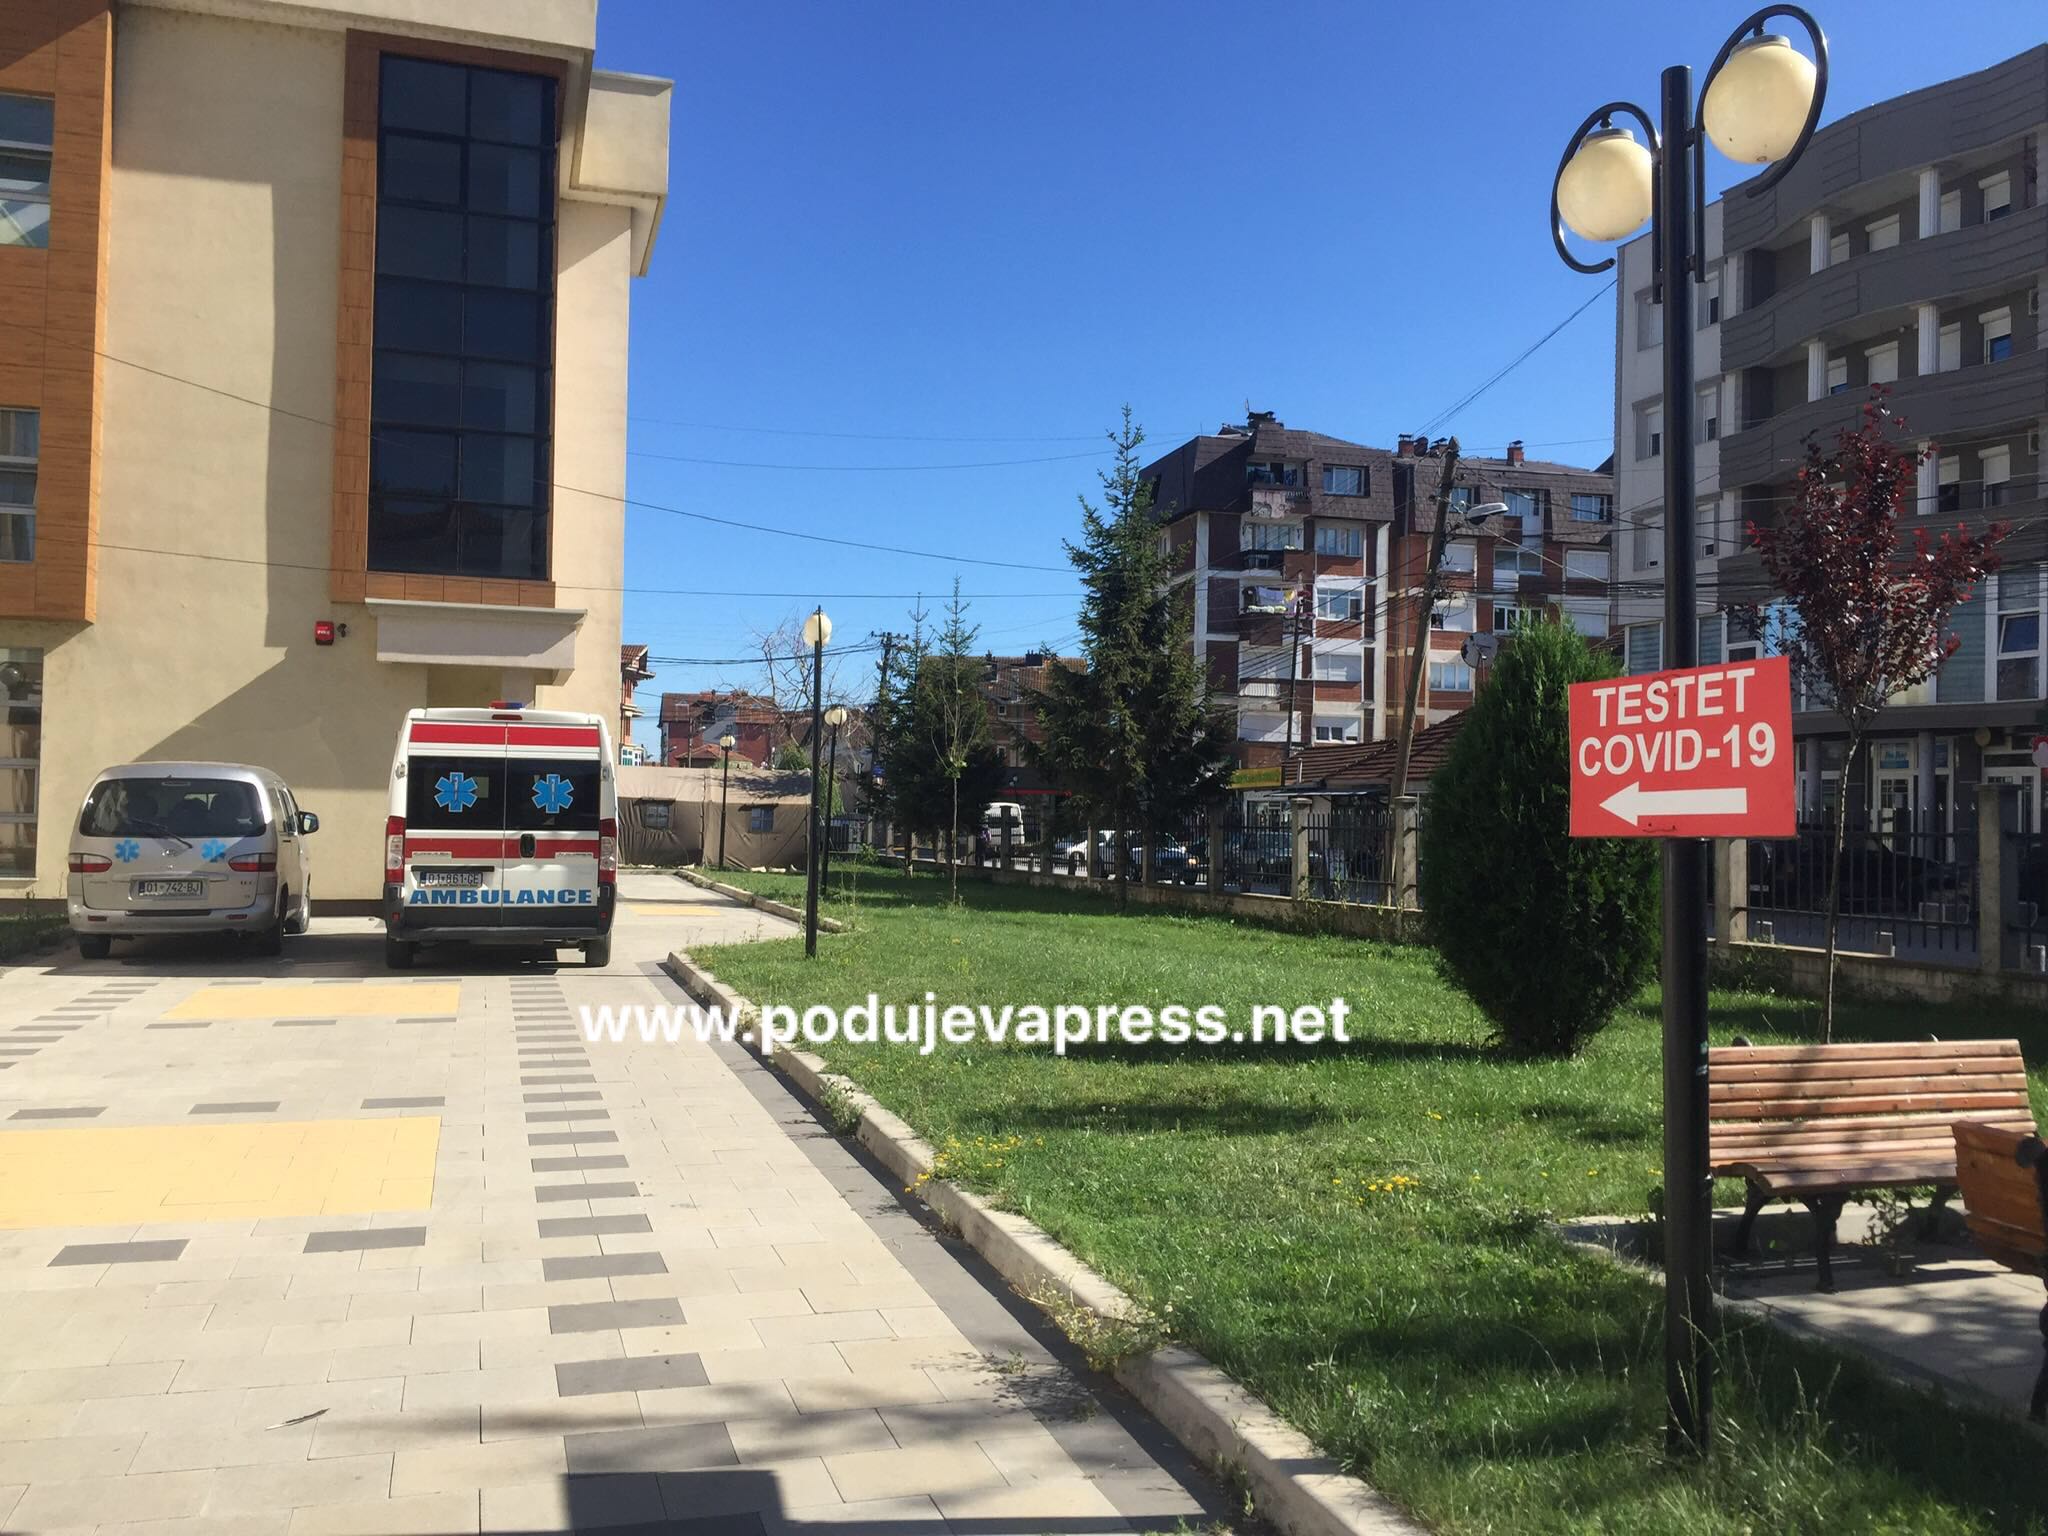  902 raste aktive me COVID në Podujevë, numër i madh i qytetarëve duke u testuar |Foto